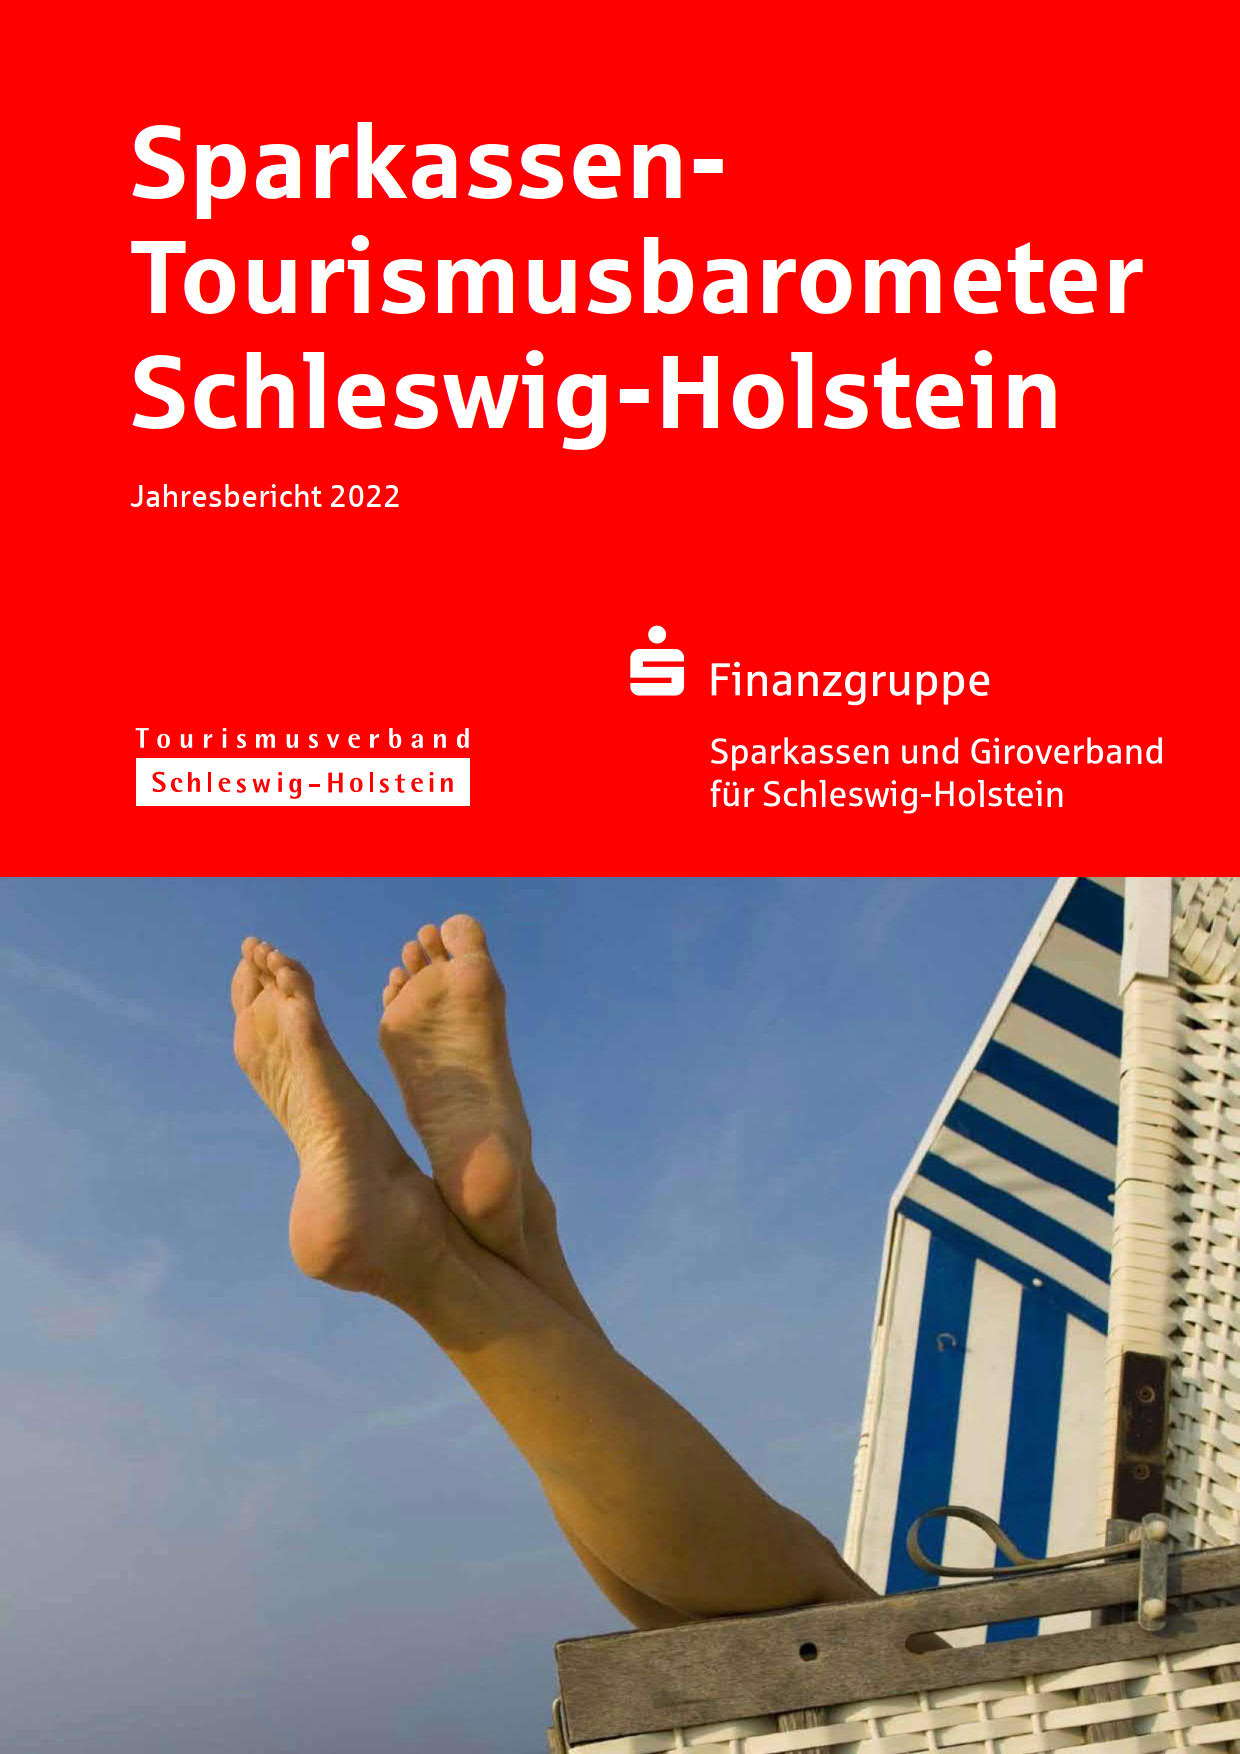 dwif: Sparkassen-Tourismusbarometer Schleswig-Holstein Workation Cover